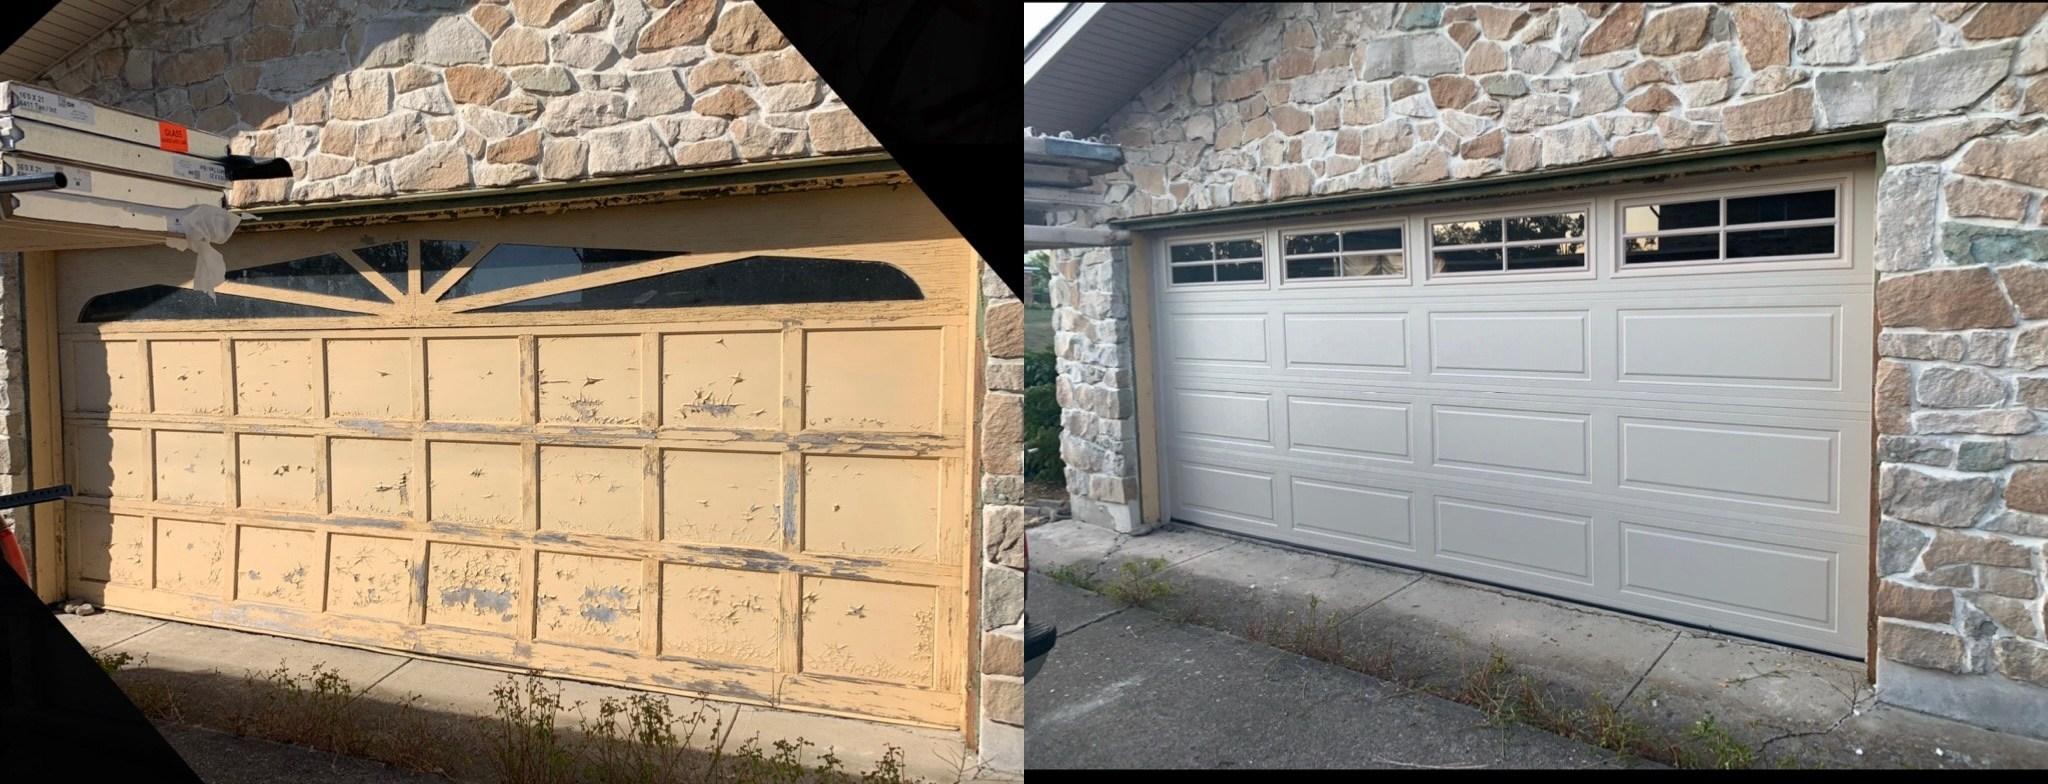 Overhead Door Installation | Before & After